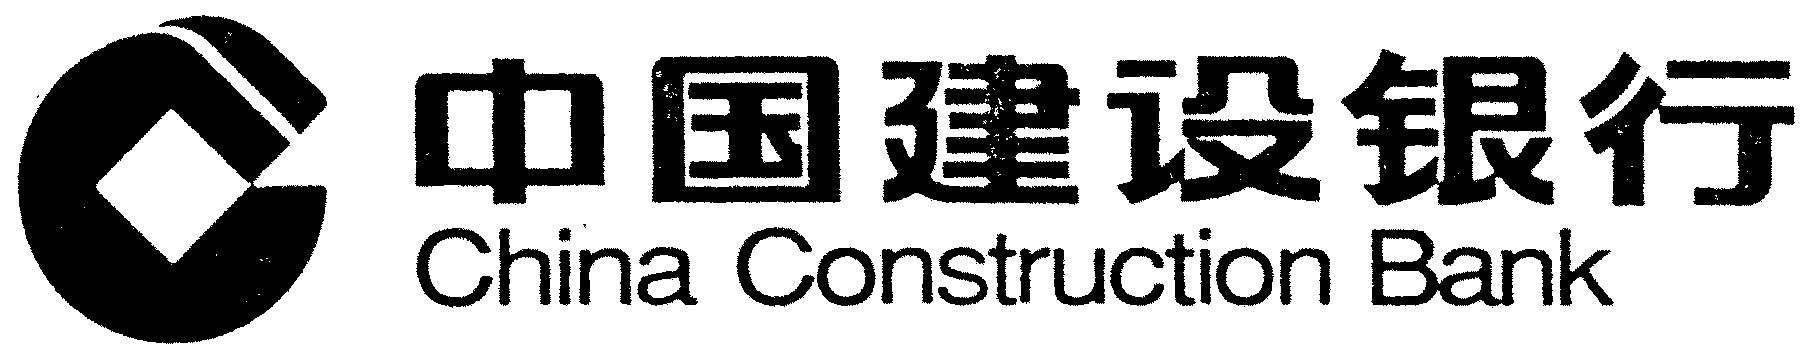  CHINA CONSTRUCTION BANK